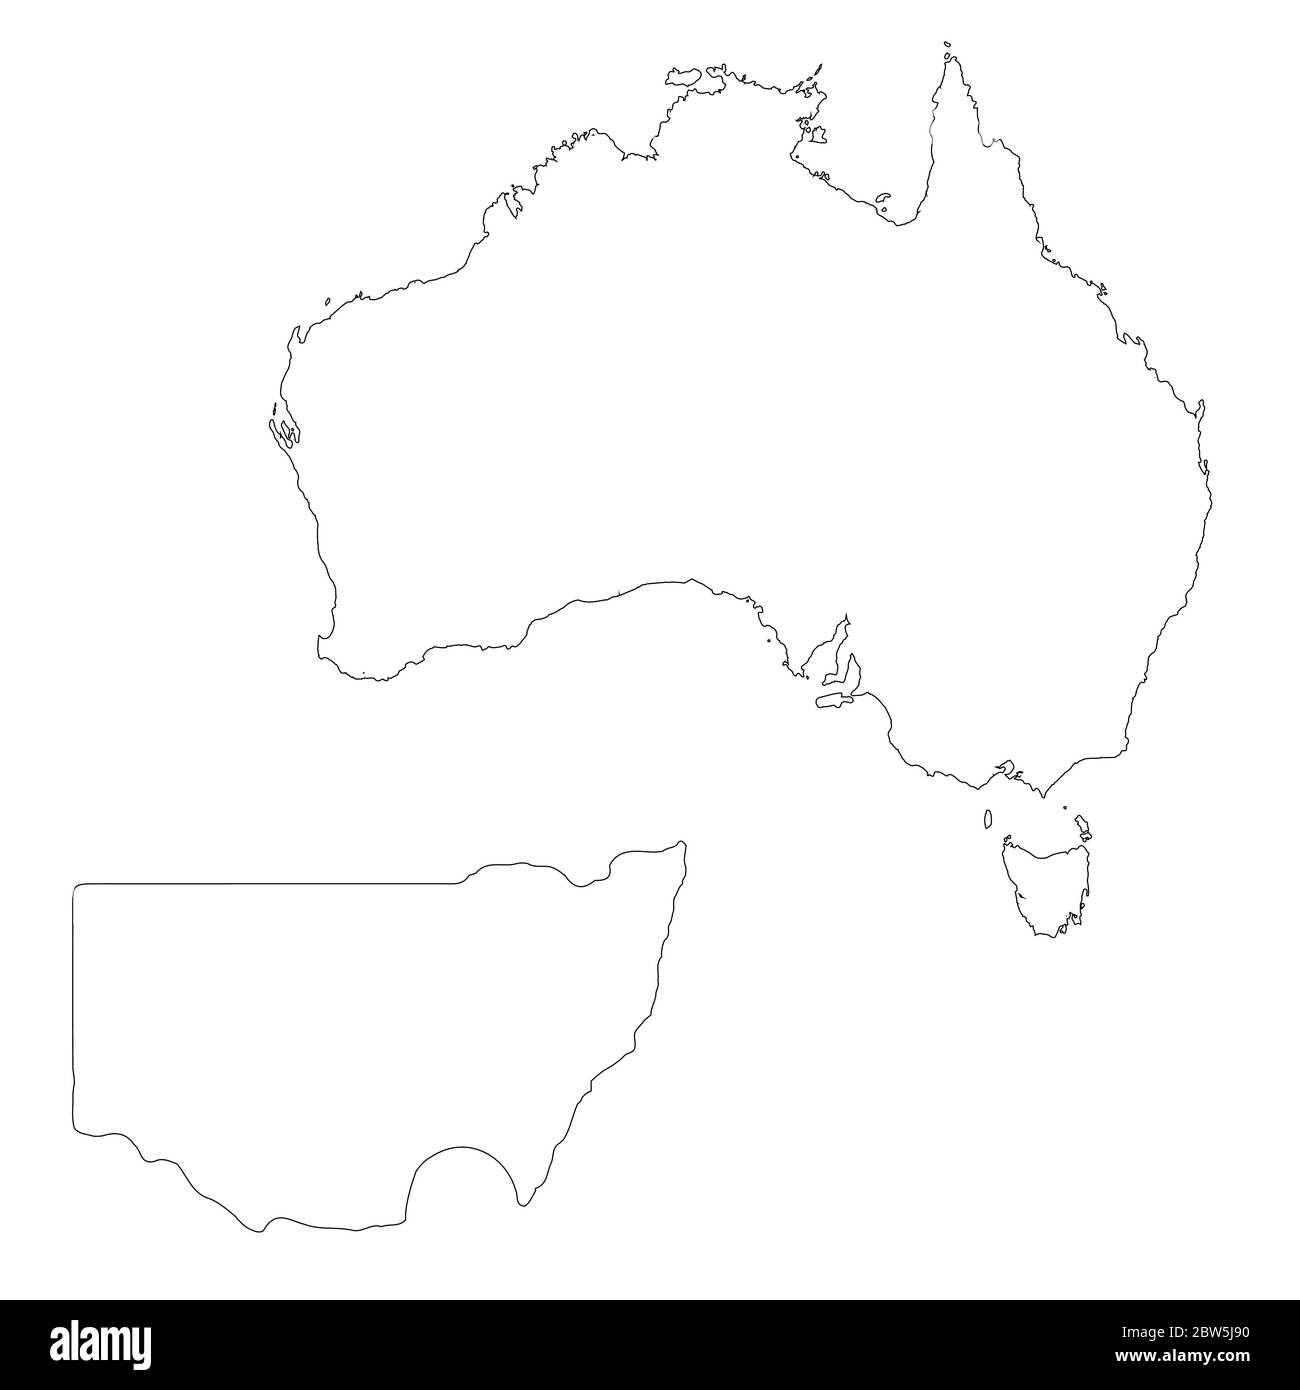 Vektorkarte Australien und Canberra. Land und Hauptstadt. Isolierte Vektorgrafik. Übersicht. EPS 10-Abbildung. Stock Vektor